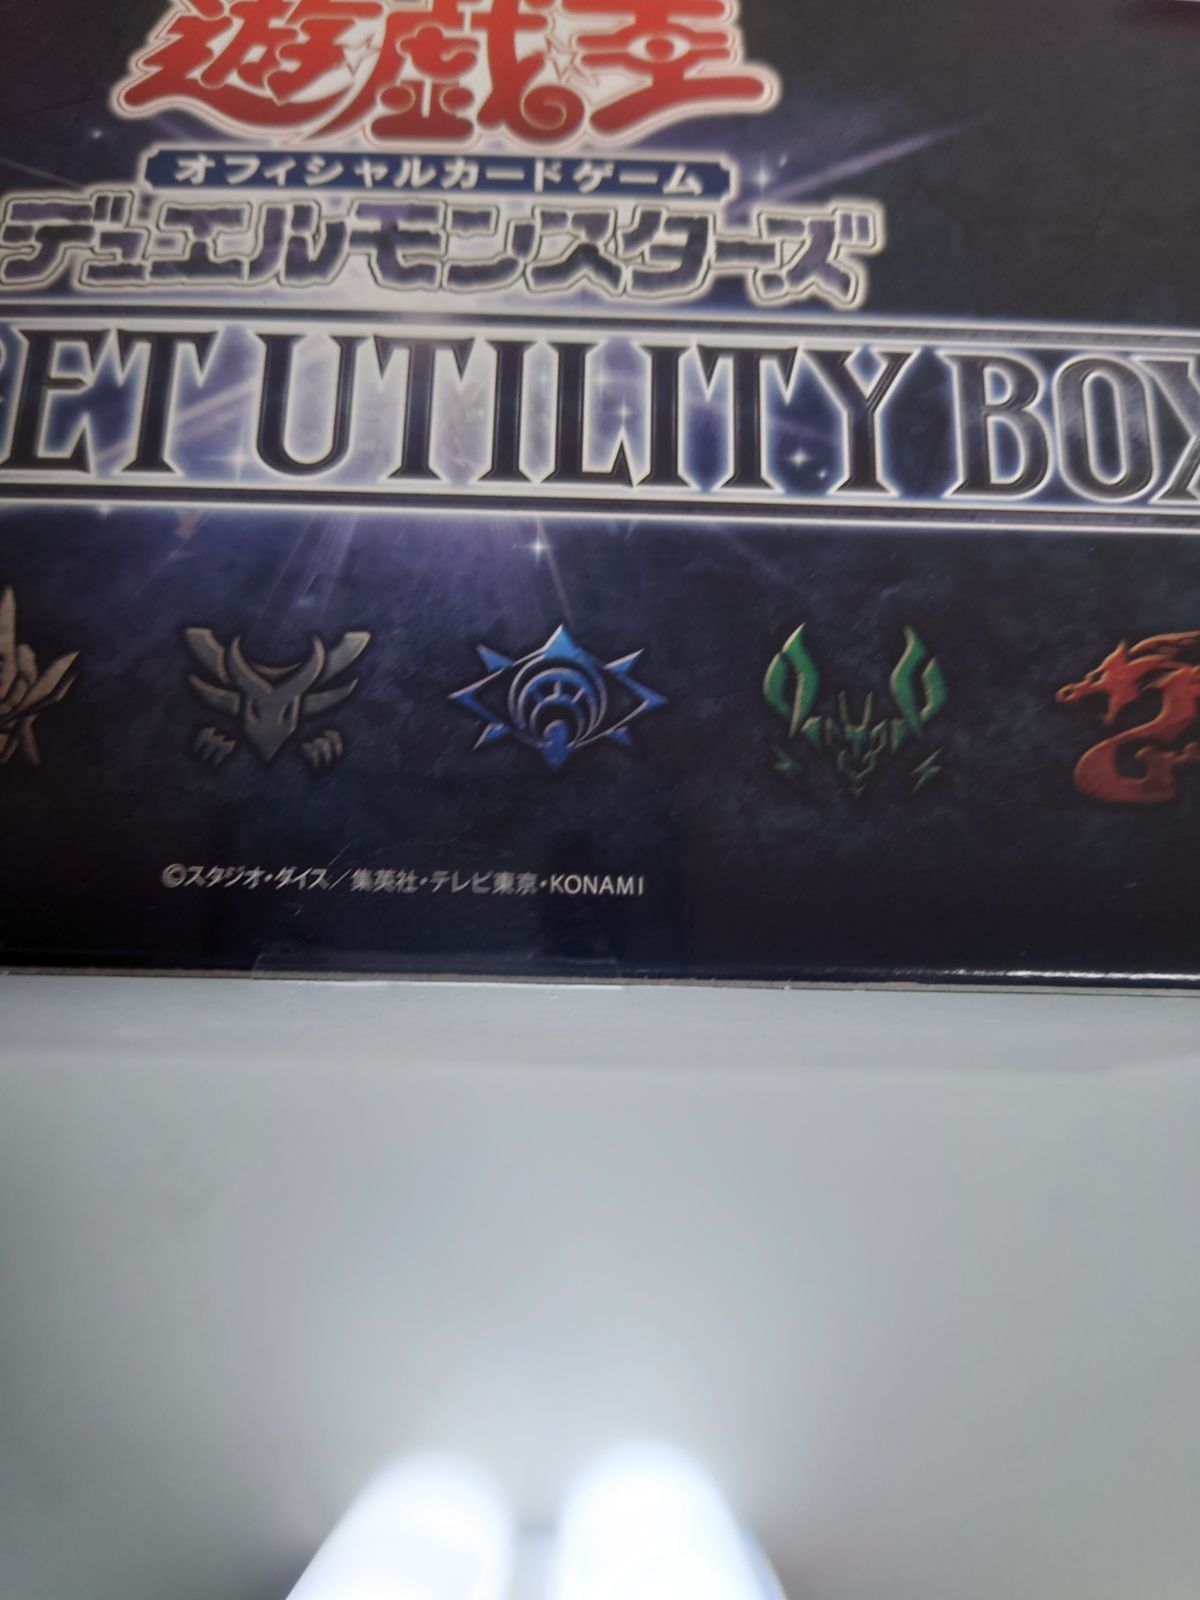 遊戯王 シークレットユーティリティ ボックス 2BOX - メルカリ